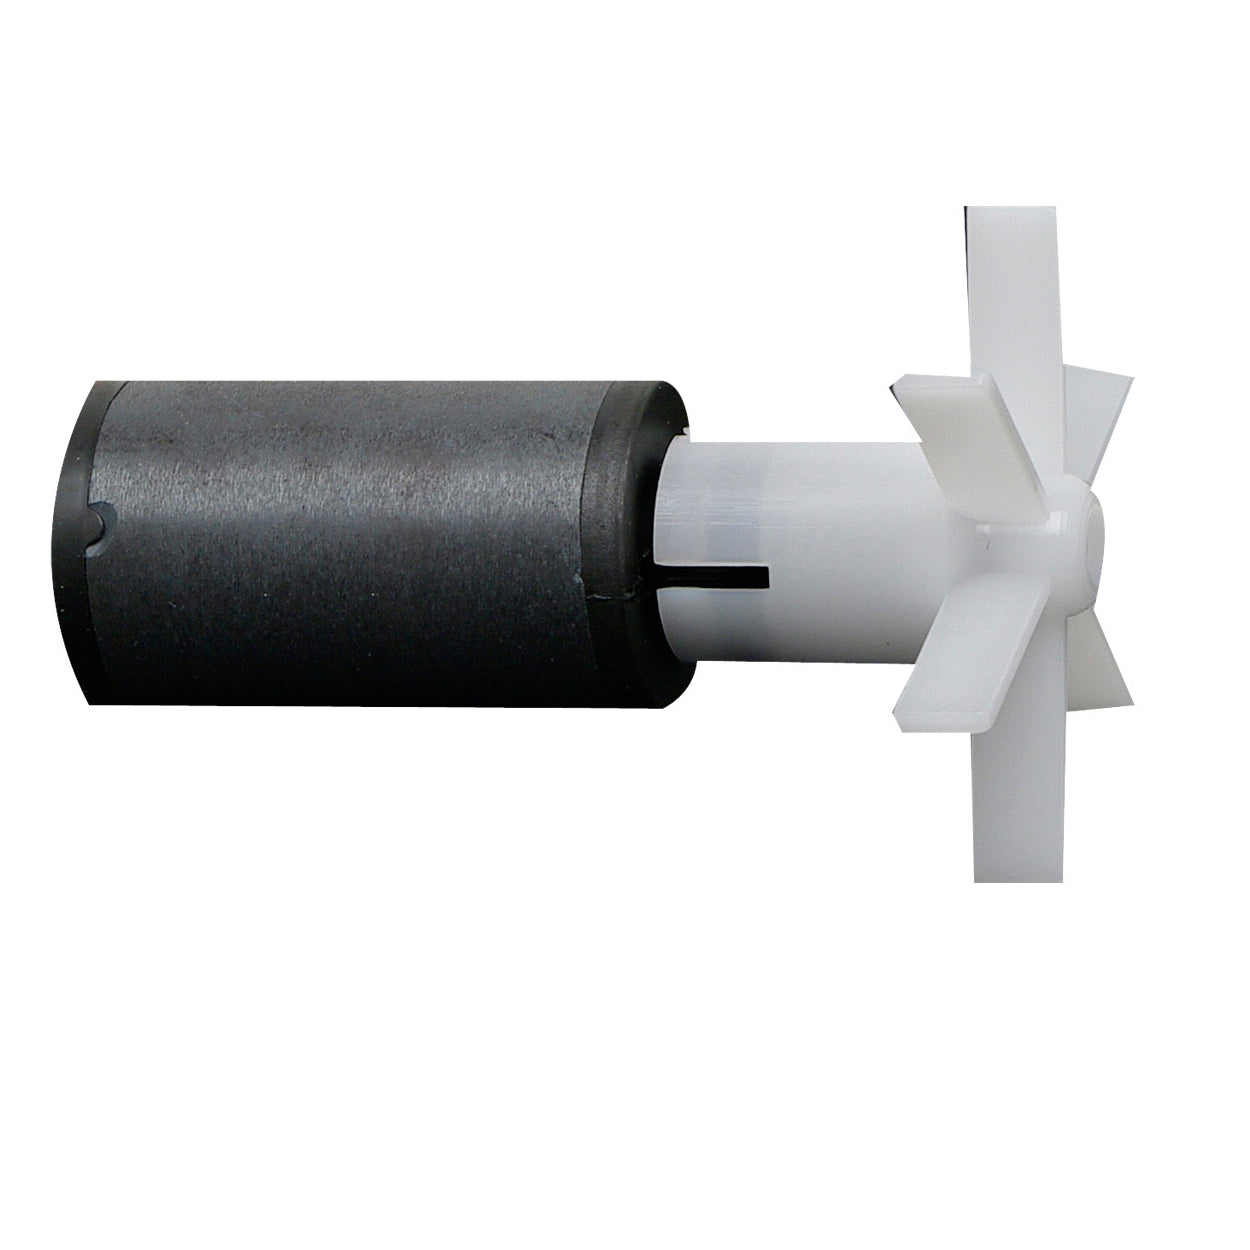 Impeller, shaft and rubber ring for Fluval 406 filter